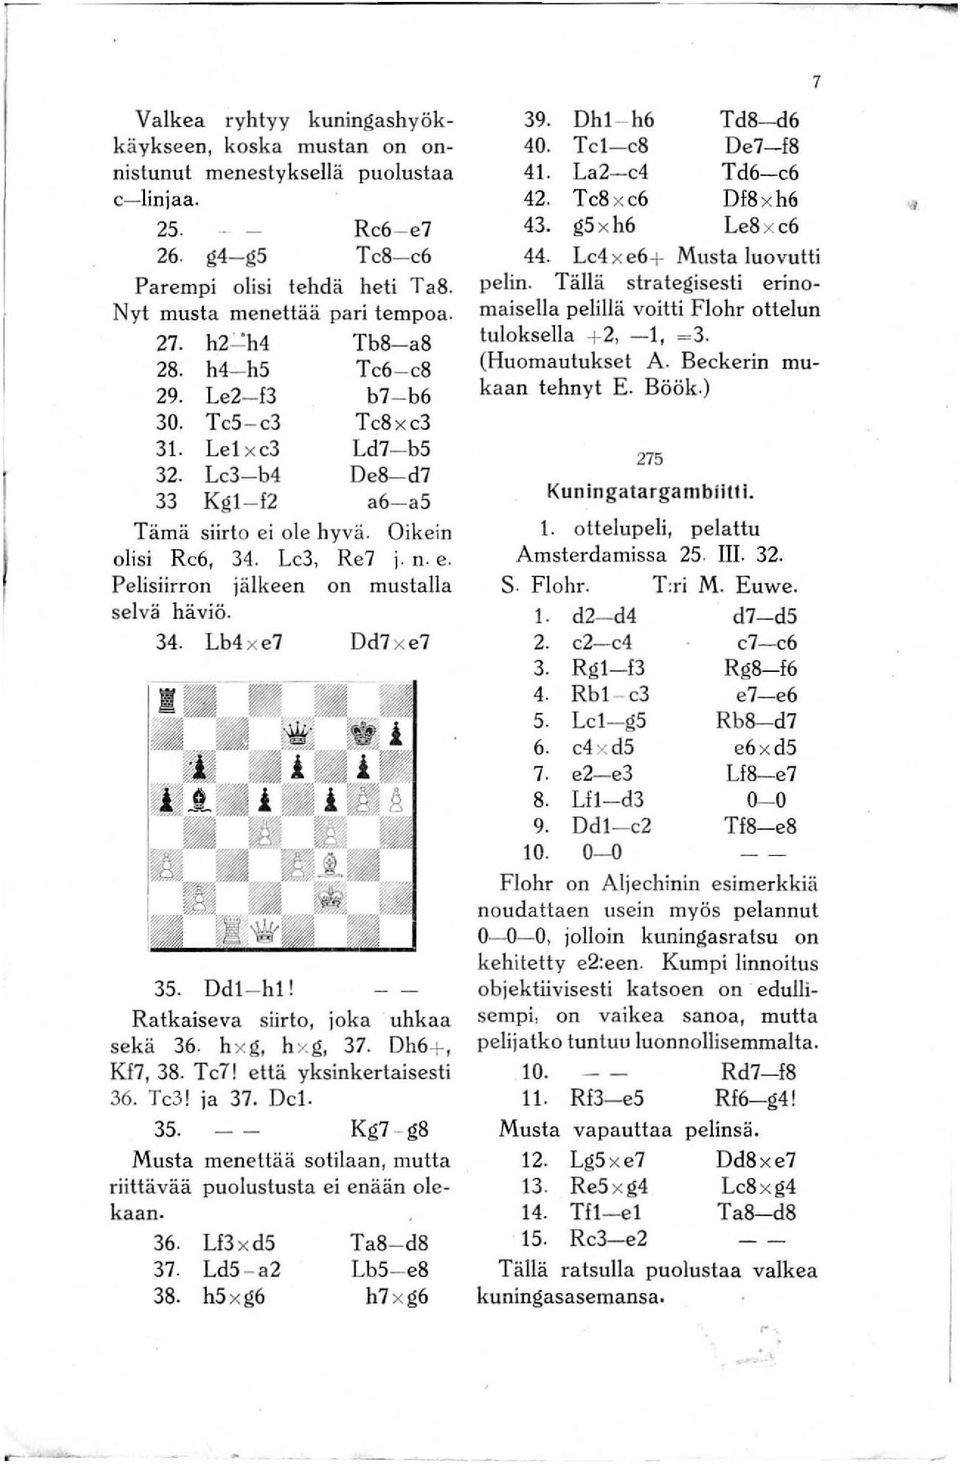 Pelisiirron jälkeen on mustalla selvä häviö. 34. Lb4 x e7 Dd7 x e7 35. Ddl- hl! Ratkaiseva siirto, joka uhkaa sekä 36. h xg, h xg, 37. Dh6+, Kf7, 38. Tc7! että yksinkertaisesti 36. Tc3! ja 37. Del.